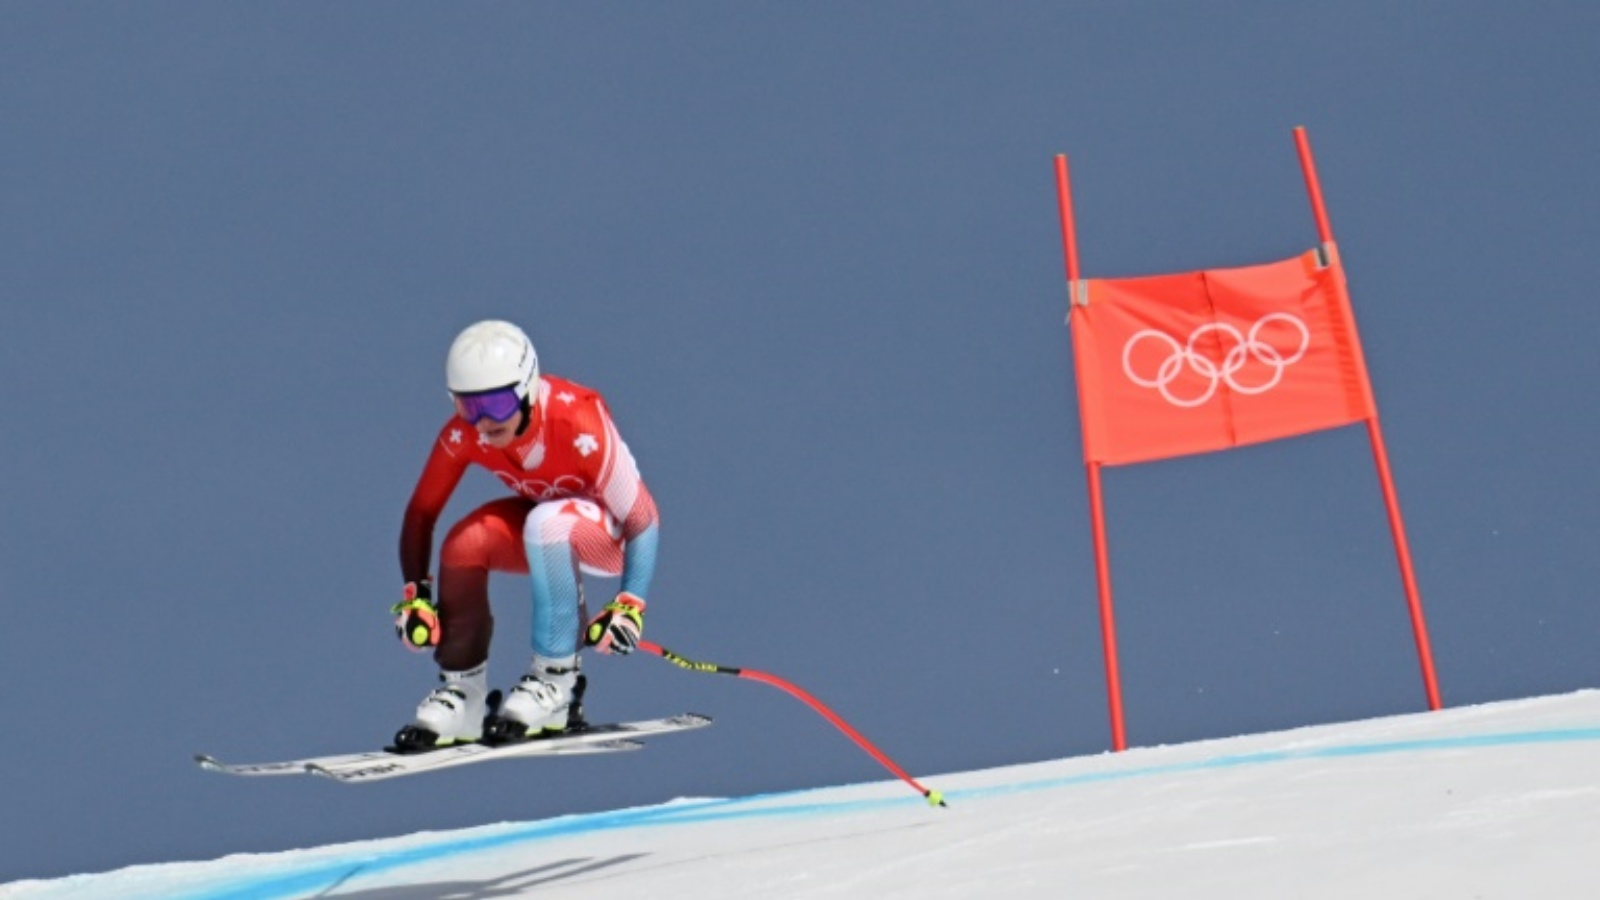 السويسرية لارا غوت بهرامي في طريقها إلى إحراز ذهبية سباق التعرج سوبر طويل في أولمبياد بكين الشتوي. 11 فبراير 2022